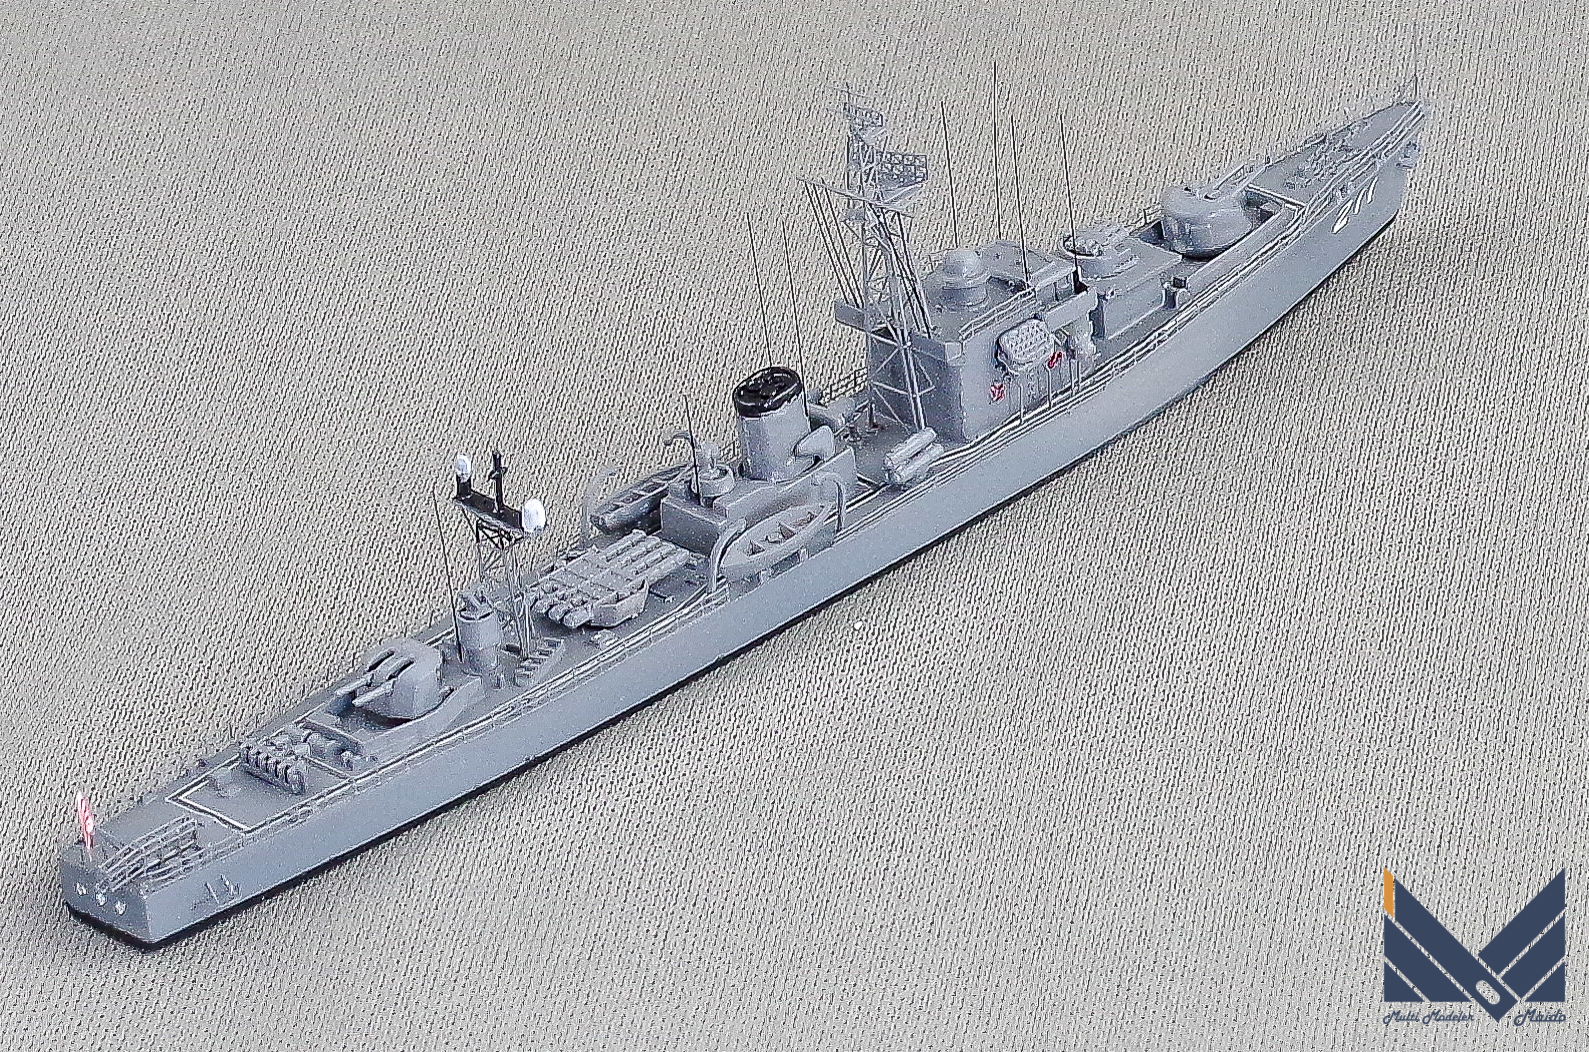 ピットロード　1/700　海上自衛隊護衛艦　いすず　プラモデル　完成品